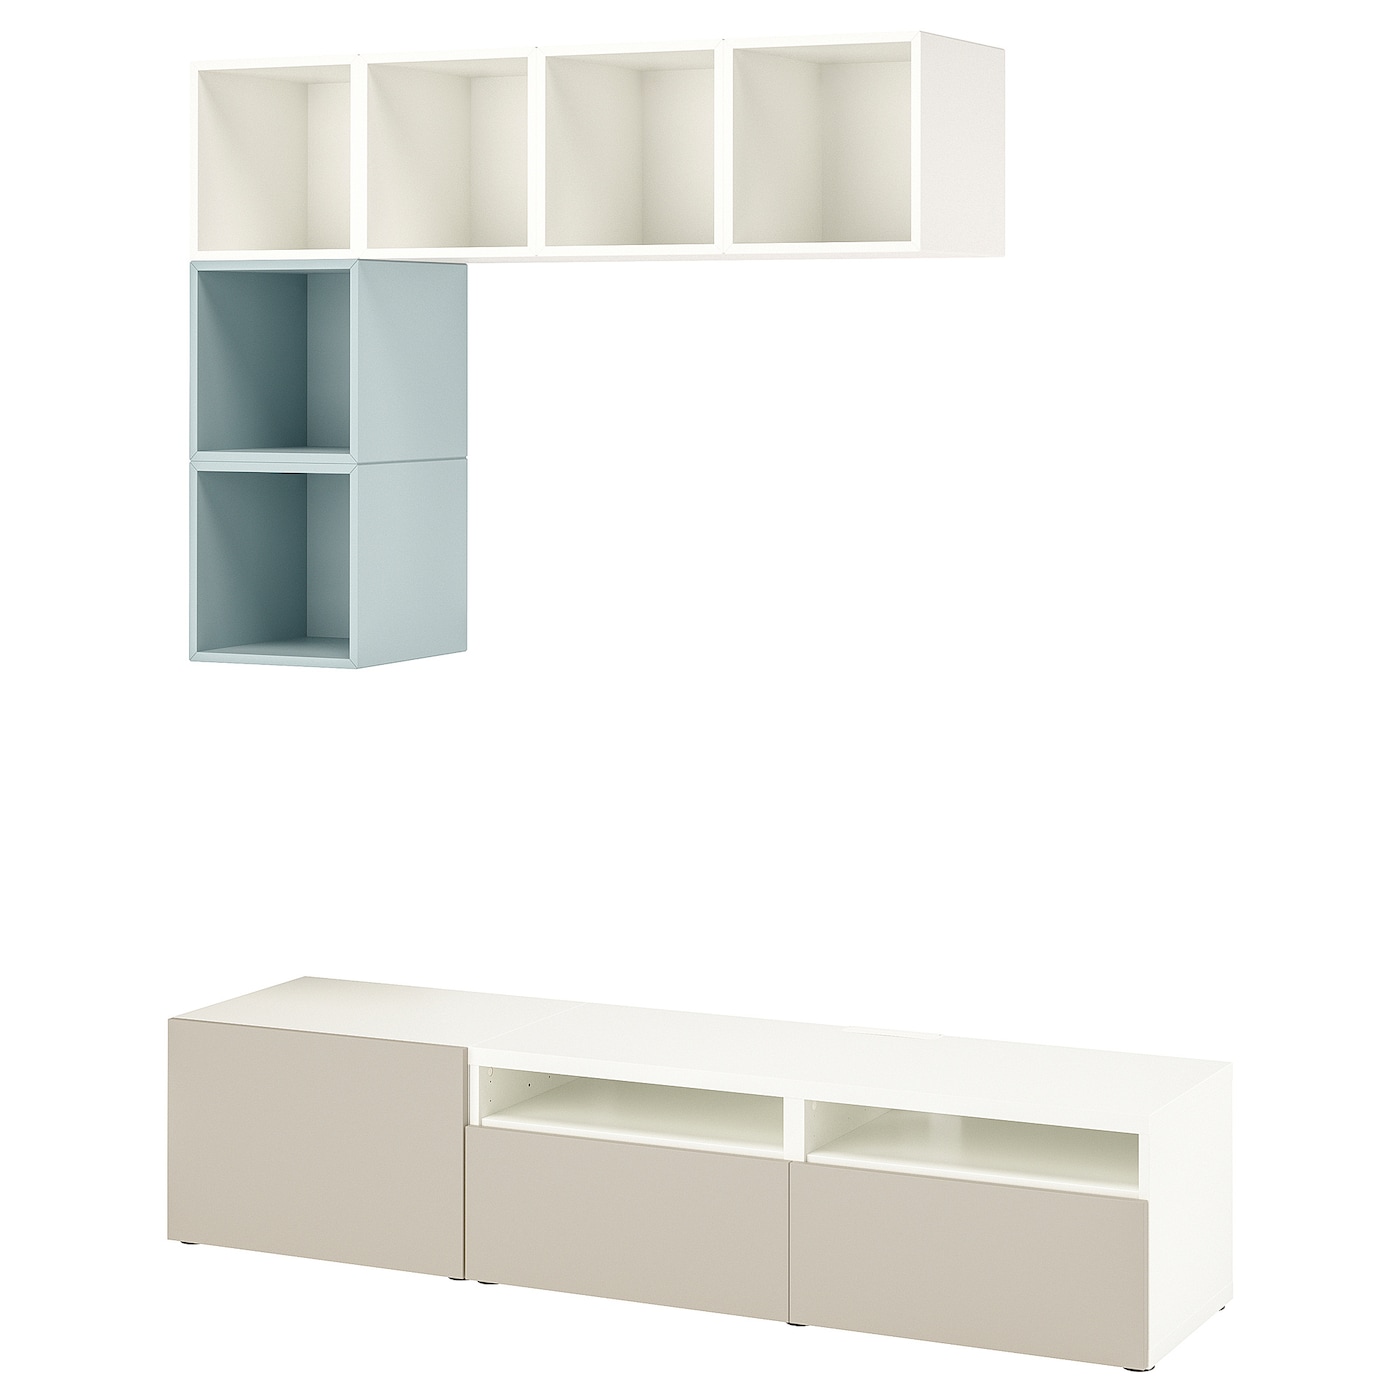 Комплект мебели д/гостиной - IKEA BESTÅ/BESTA EKET, 170x70x180см, белый/светло-голубой, БЕСТО ЭКЕТ ИКЕА